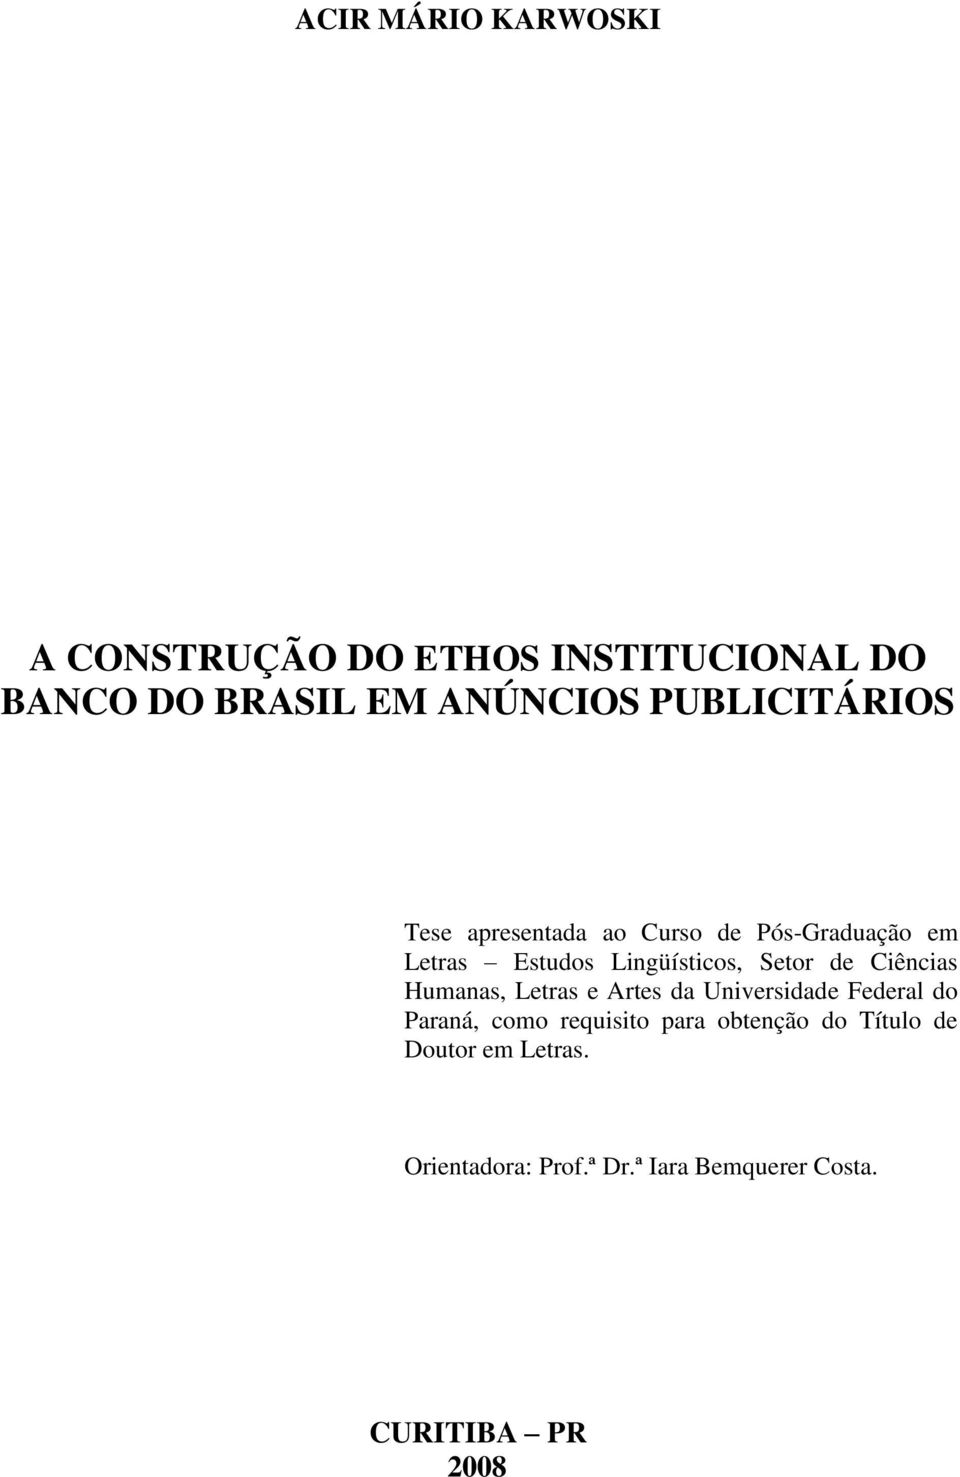 Setor de Ciências Humanas, Letras e Artes da Universidade Federal do Paraná, como requisito